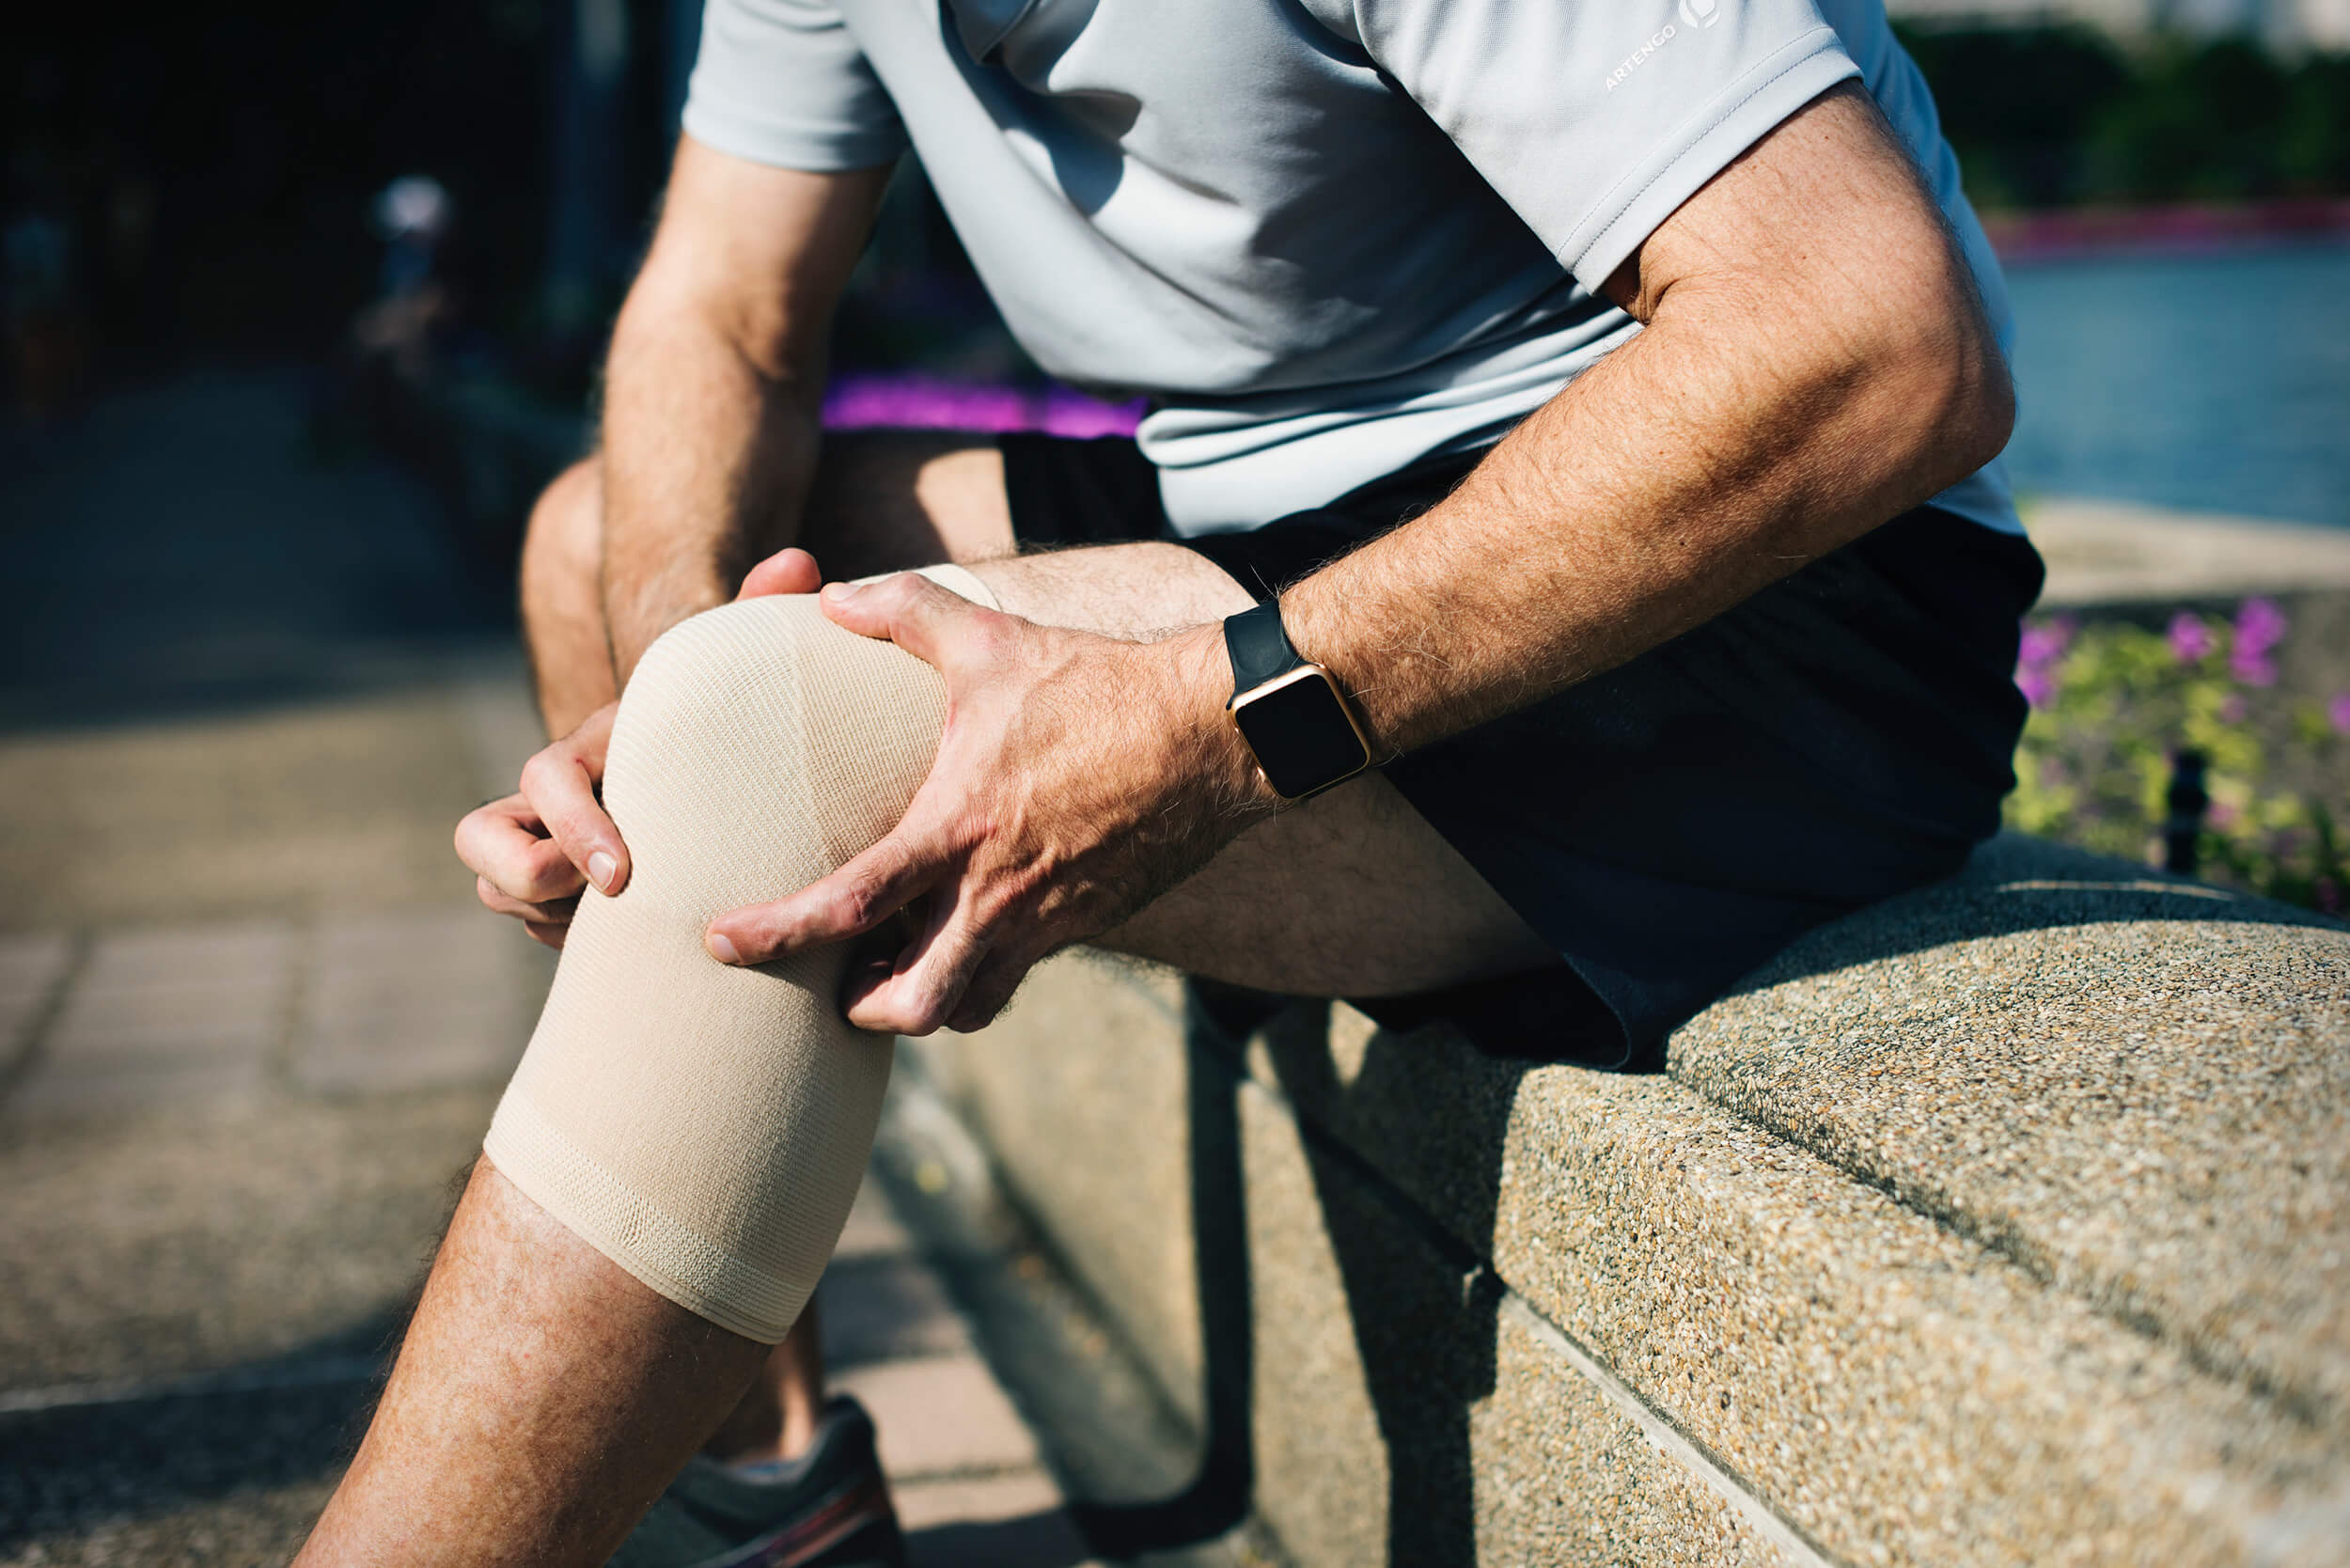 Man Holding Injured Knee